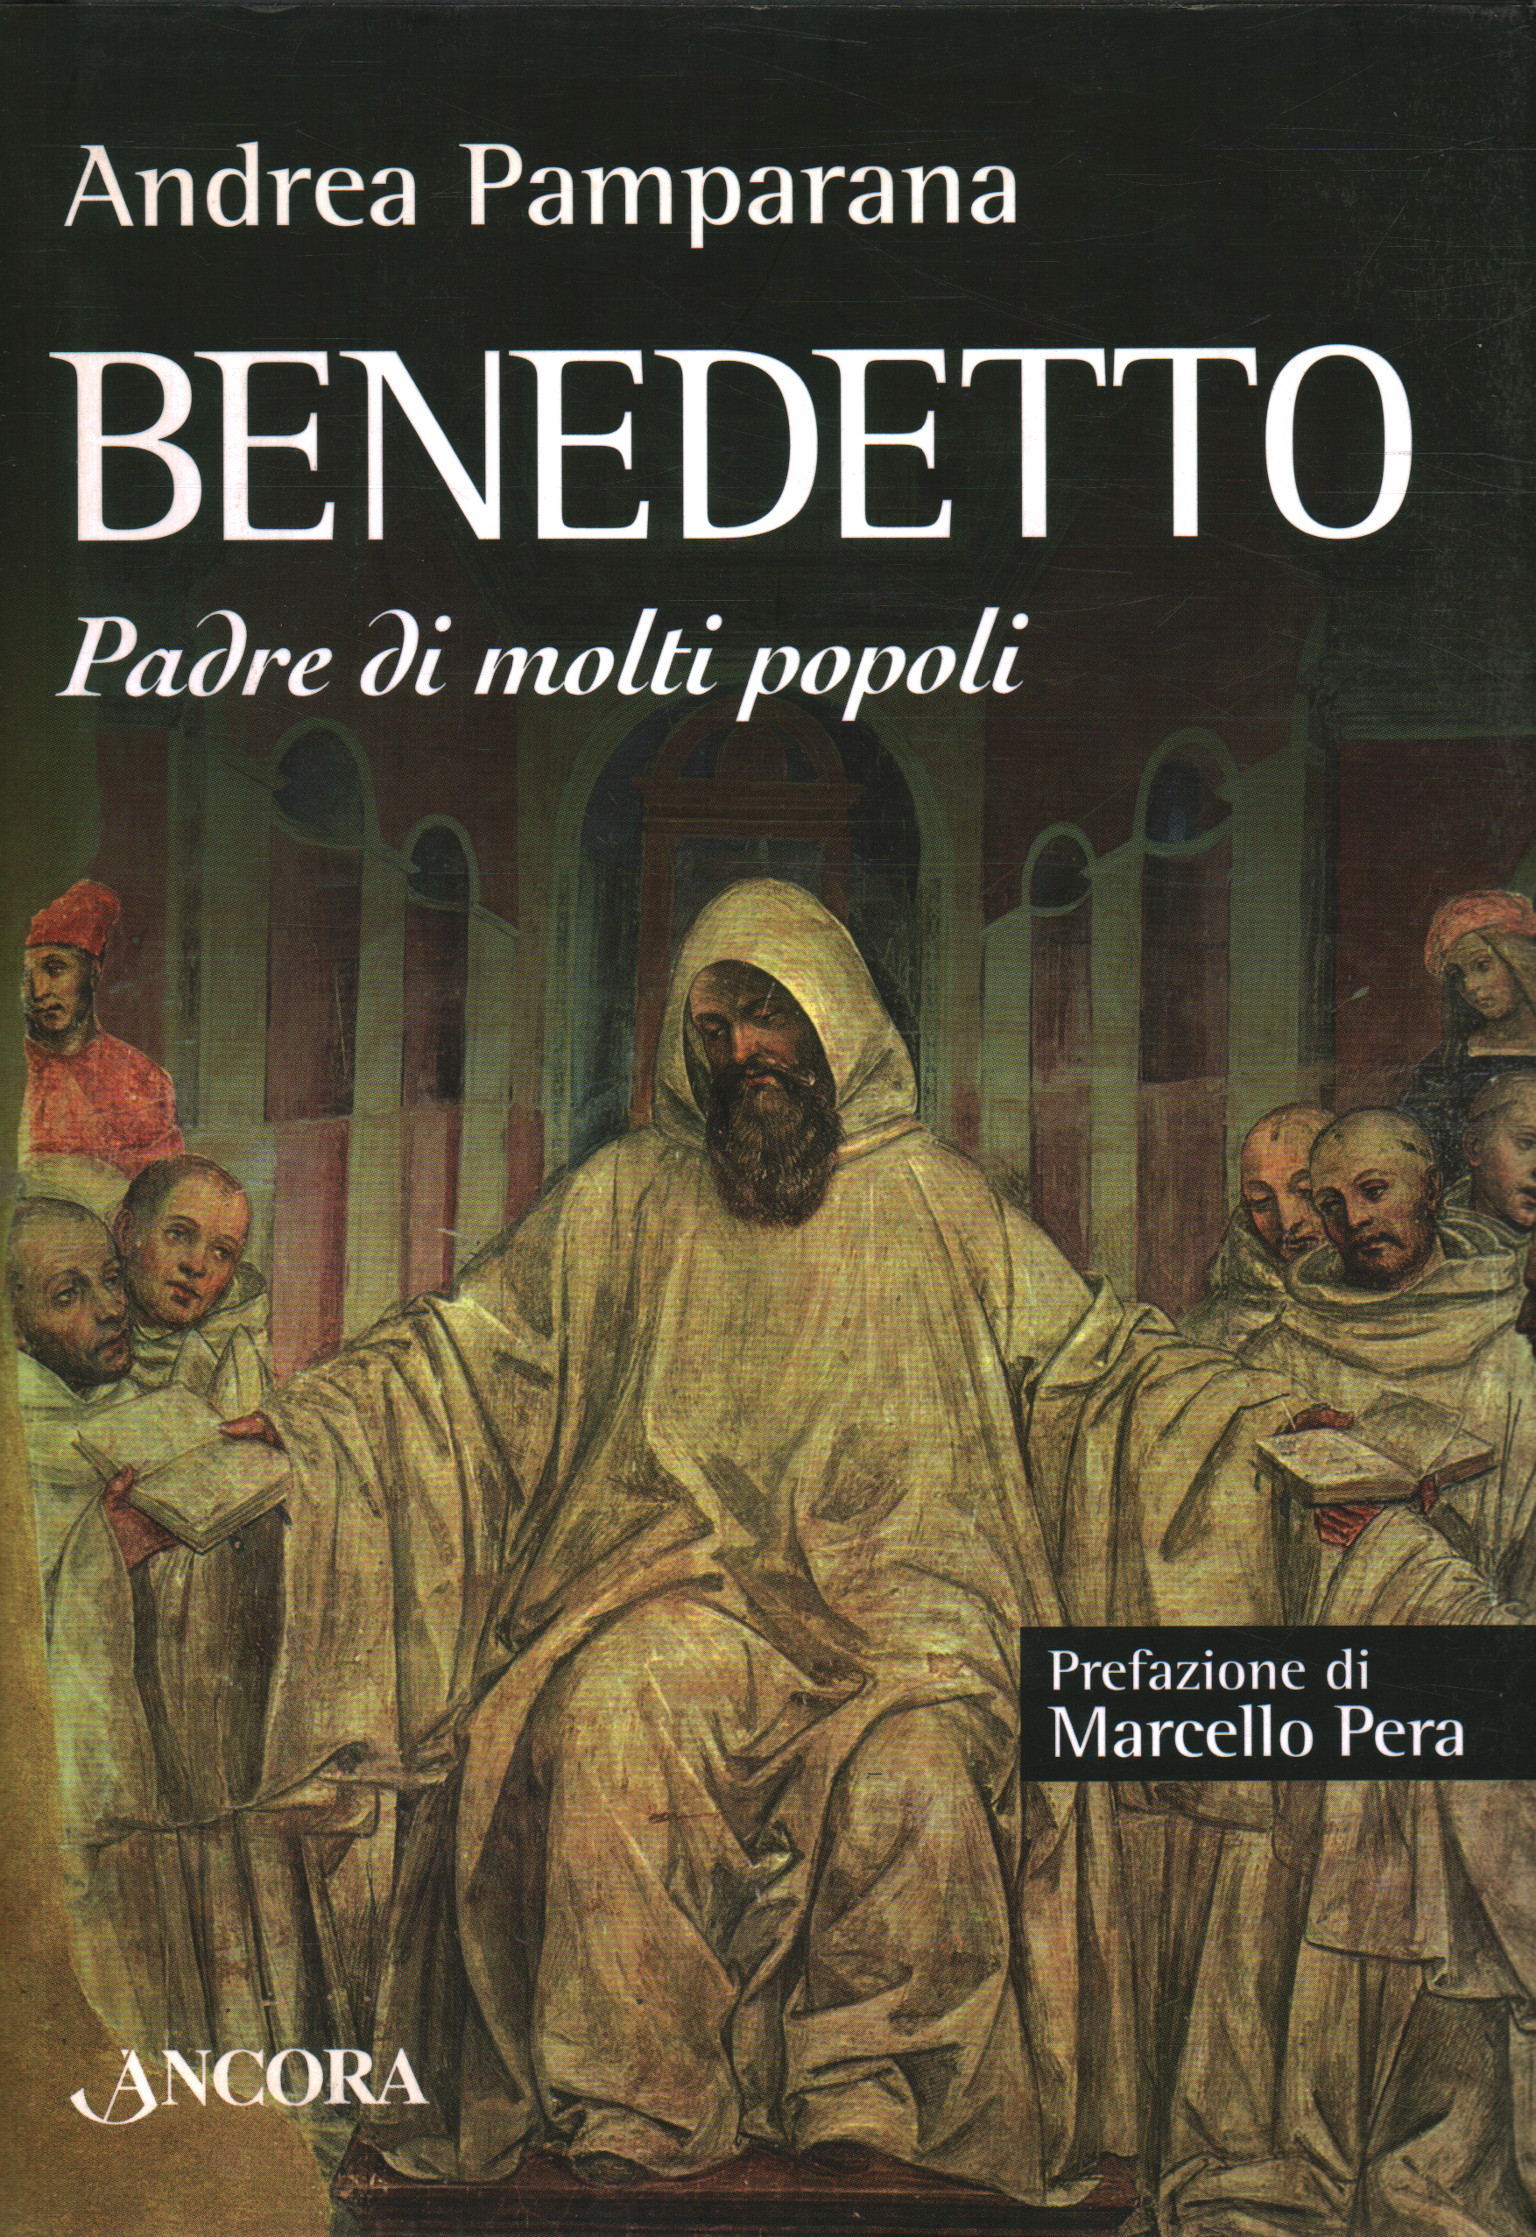 Benedicto, Andrea Pamparana